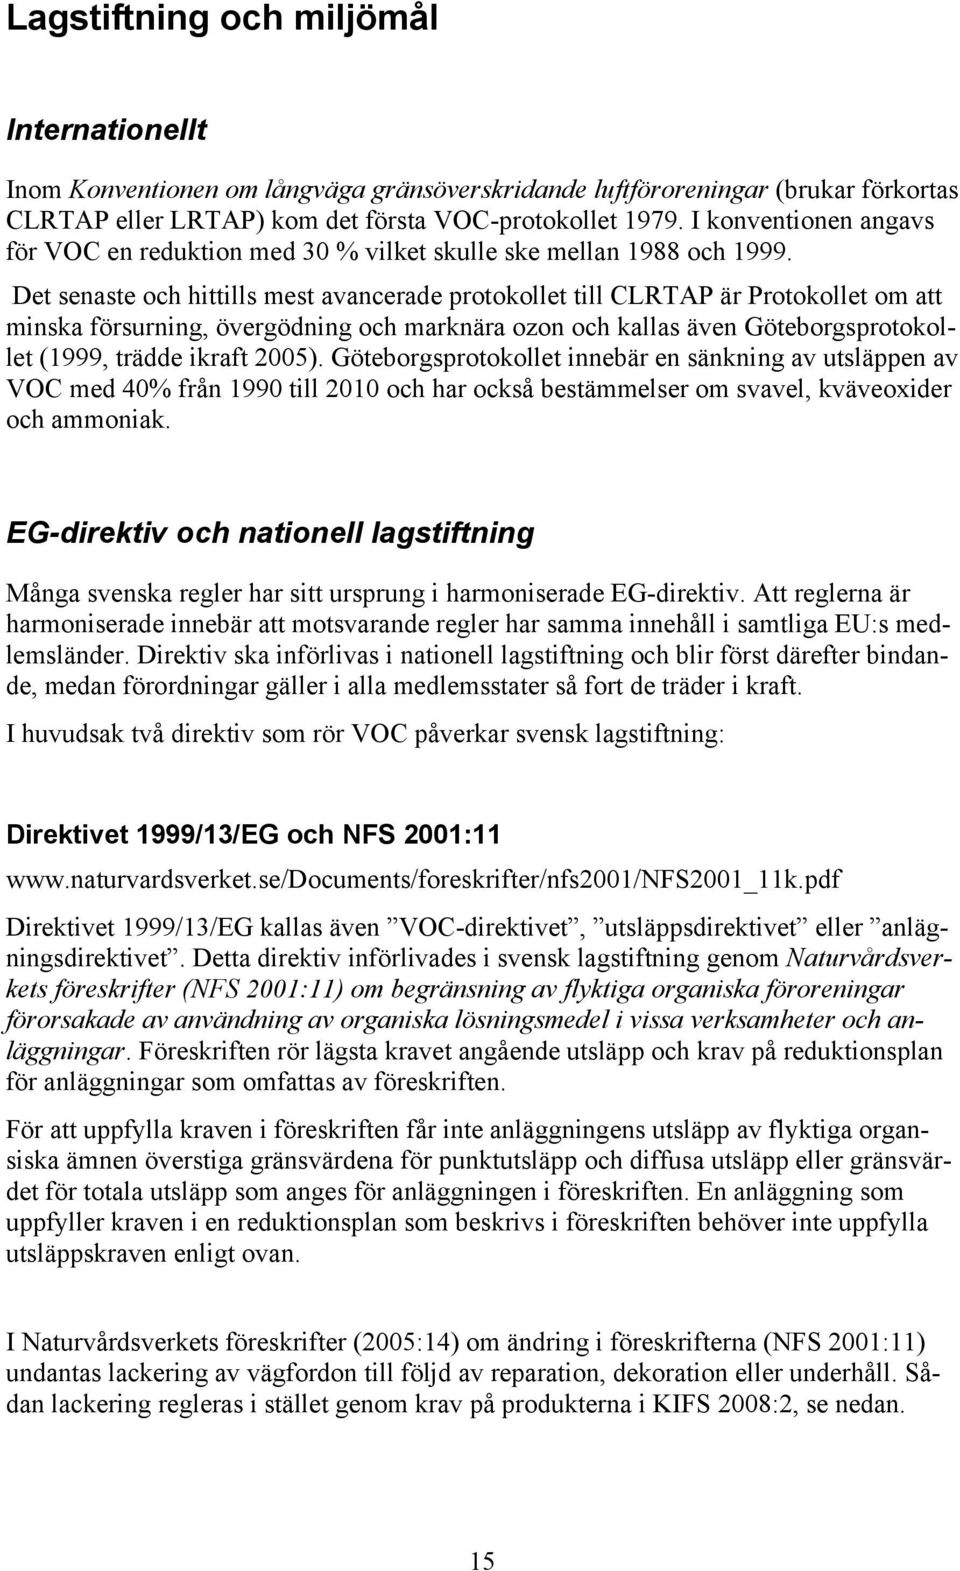 Det senaste och hittills mest avancerade protokollet till CLRTAP är Protokollet om att minska försurning, övergödning och marknära ozon och kallas även Göteborgsprotokollet (1999, trädde ikraft 2005).